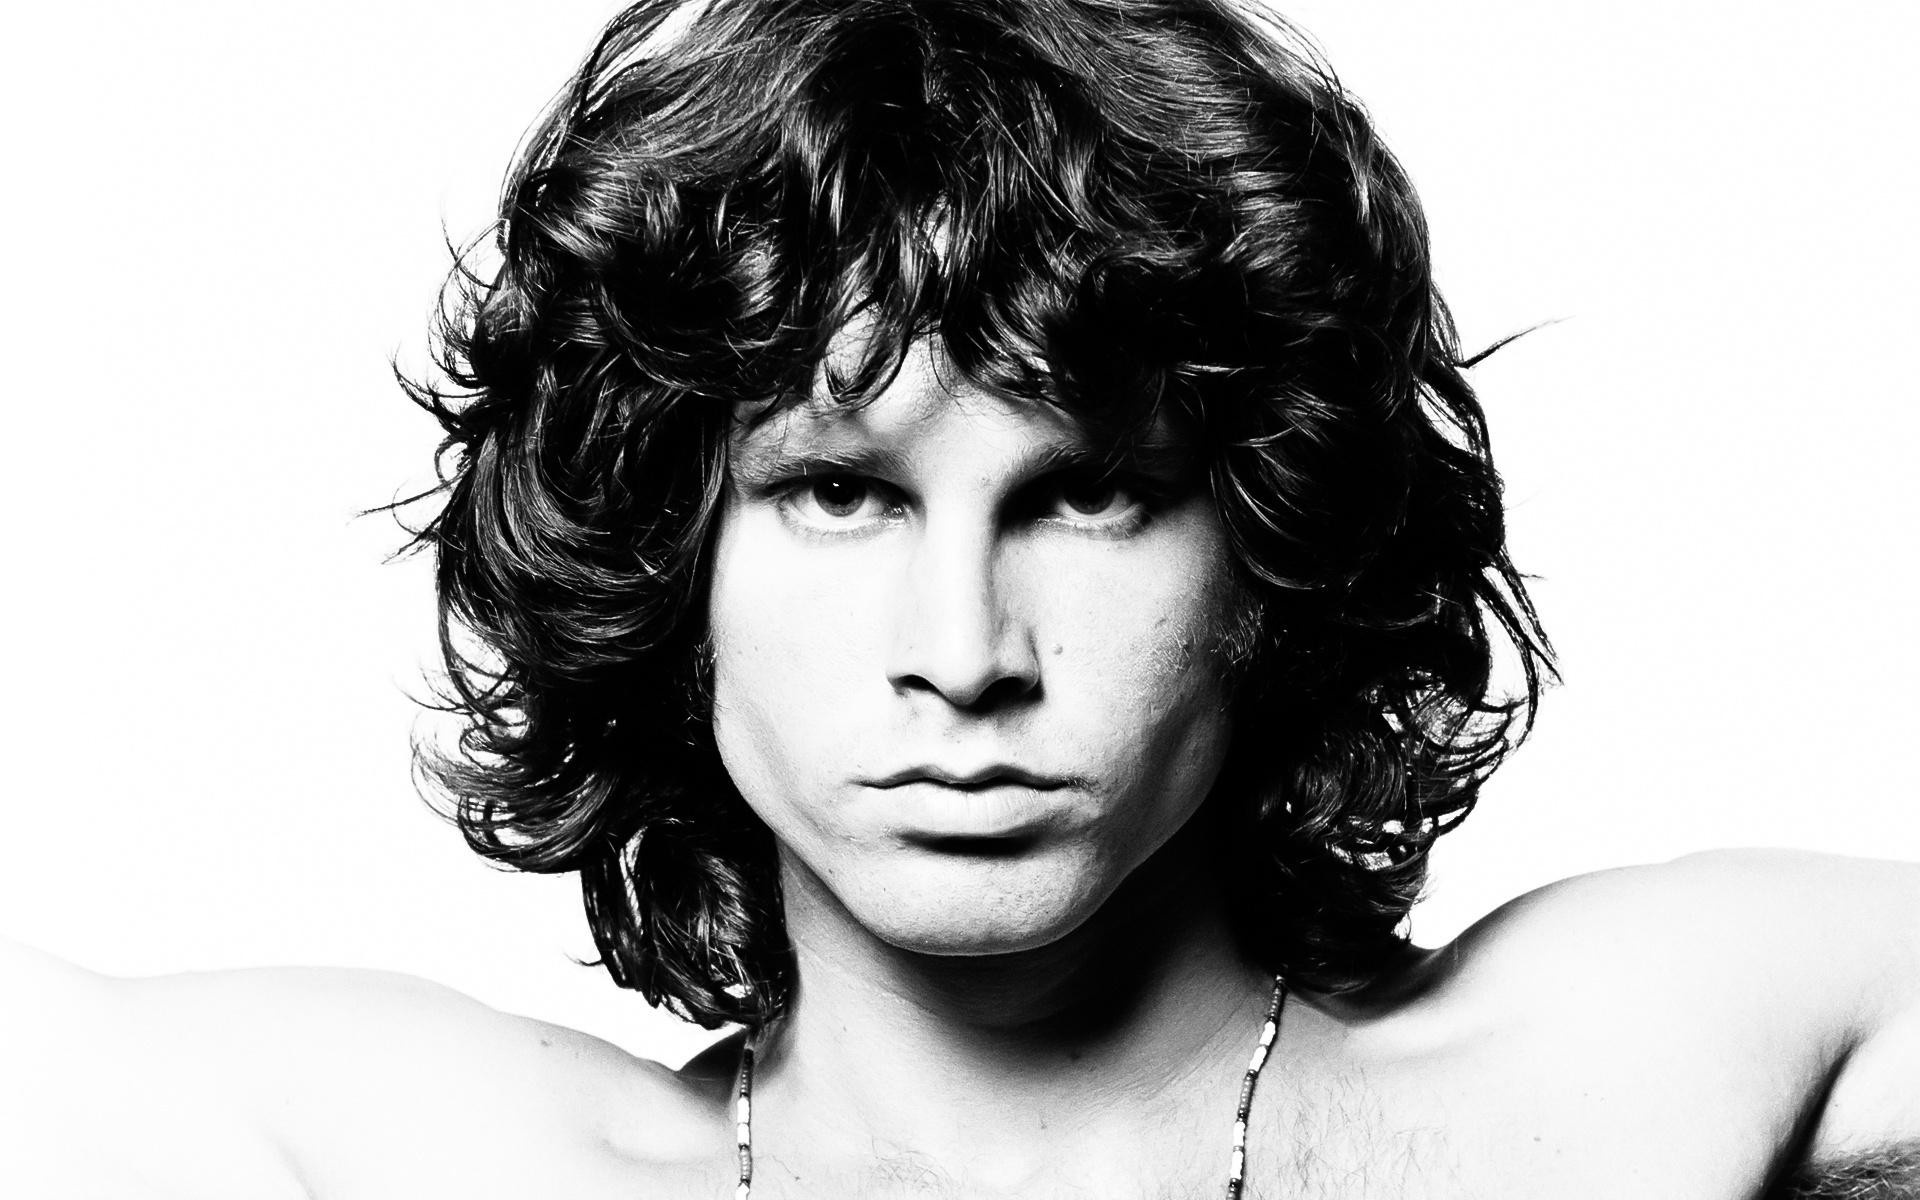 Jim Morrison, HD wallpaper, Image background, Celeb artist, 1920x1200 HD Desktop